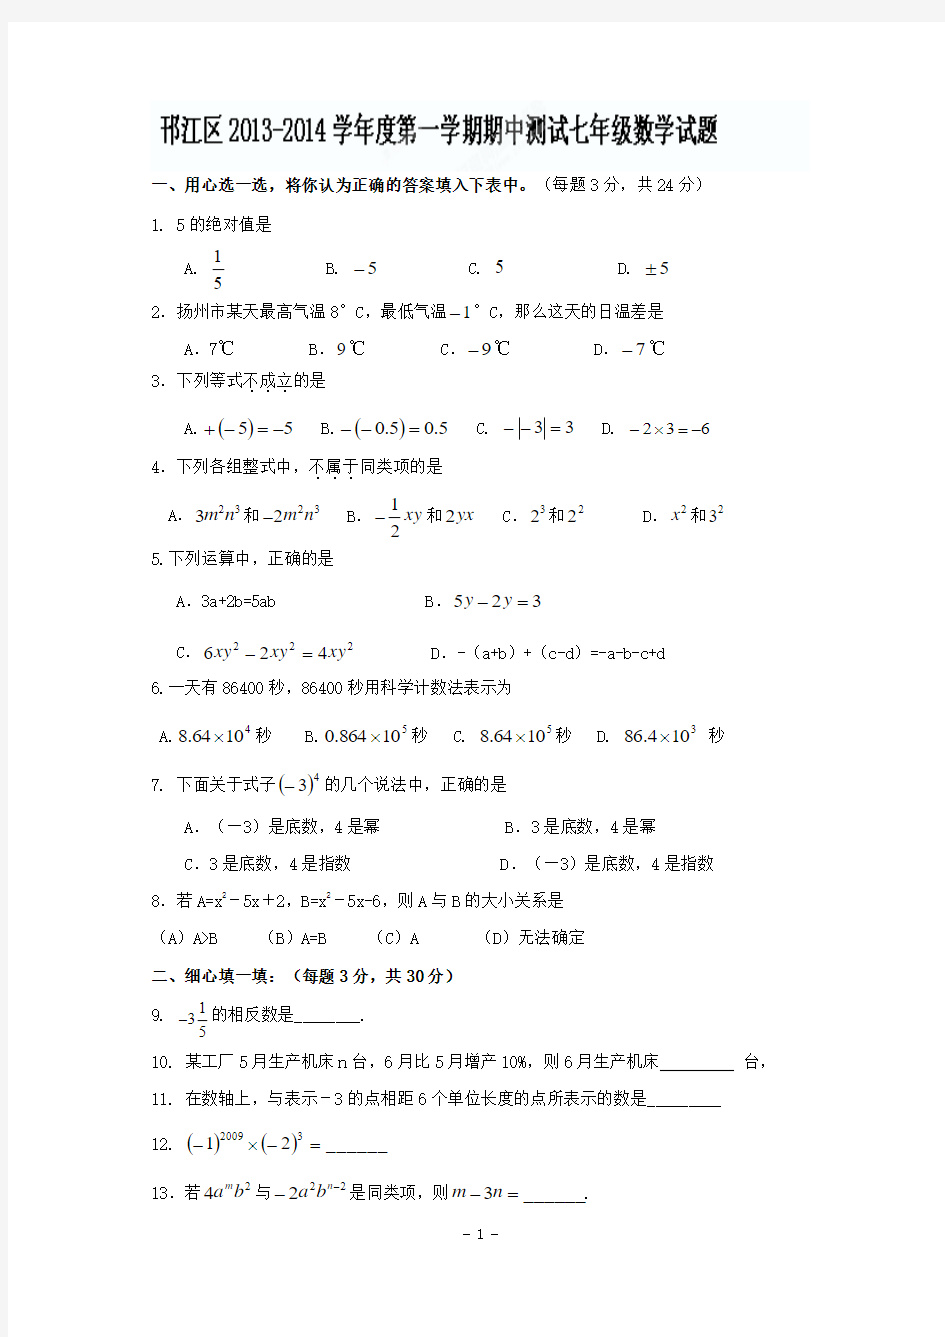 扬州市邗江区2013-1014年七年级上期中考试数学试题及答案